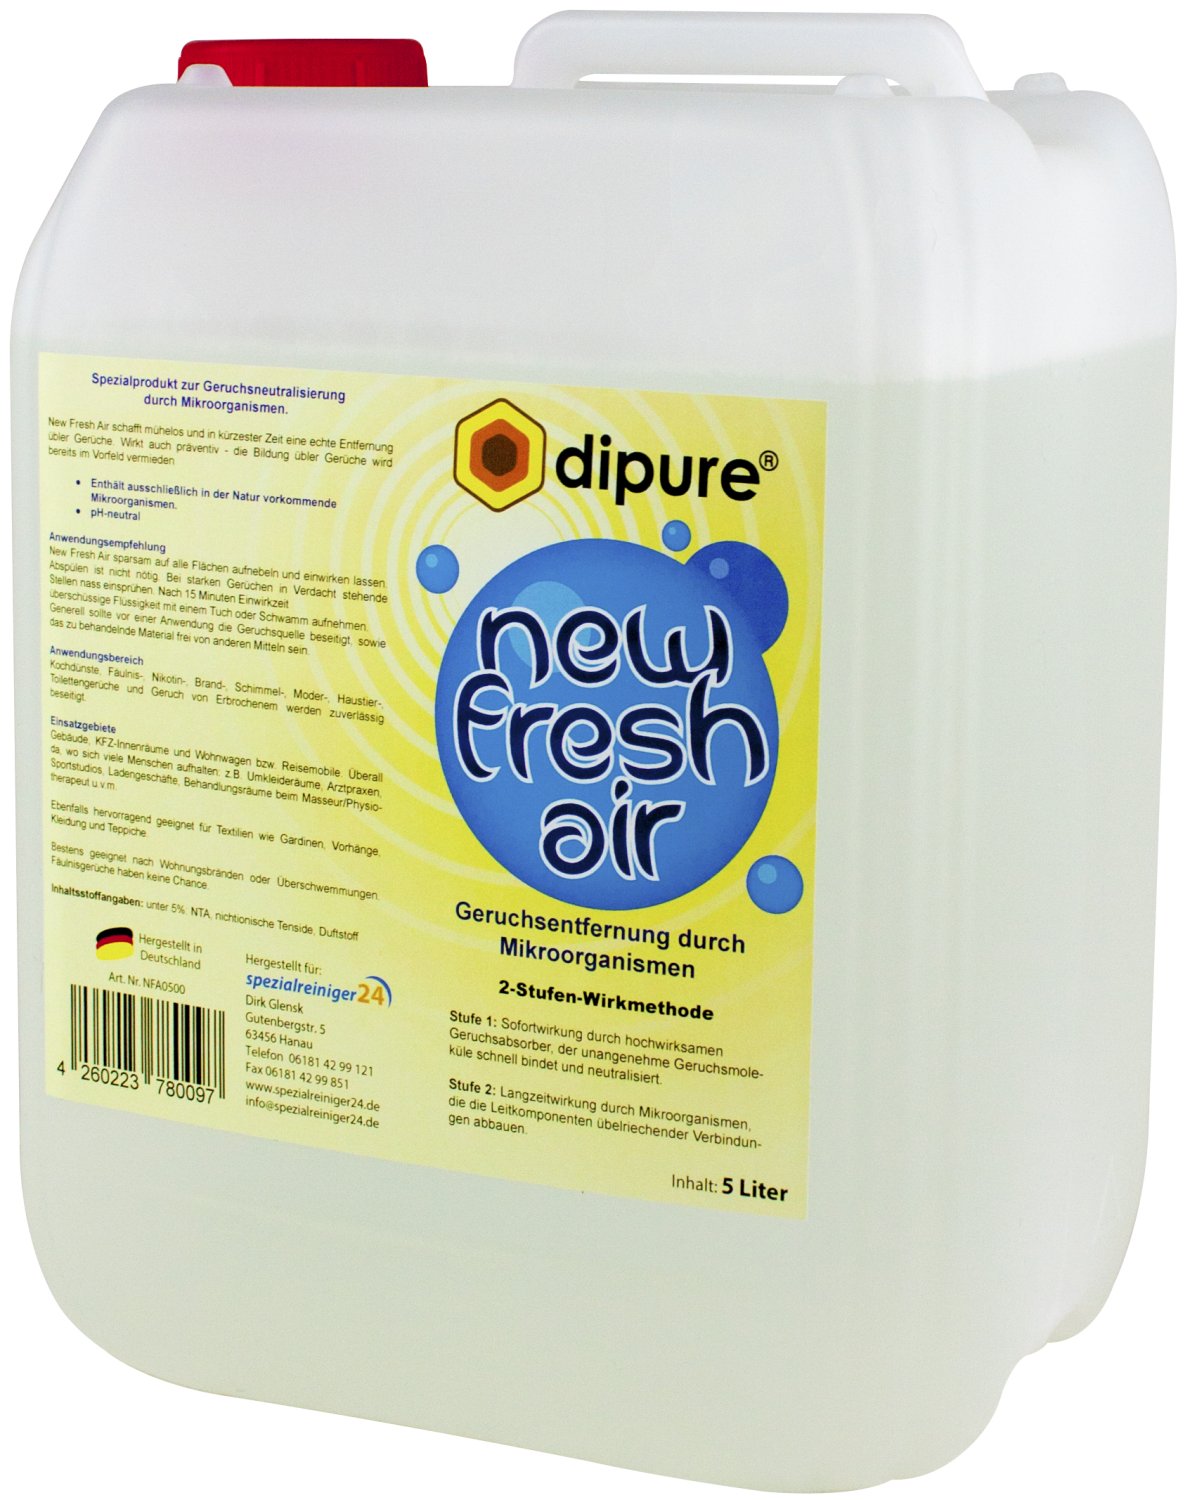 dipure® New Fresh Air Geruchsentferner mit